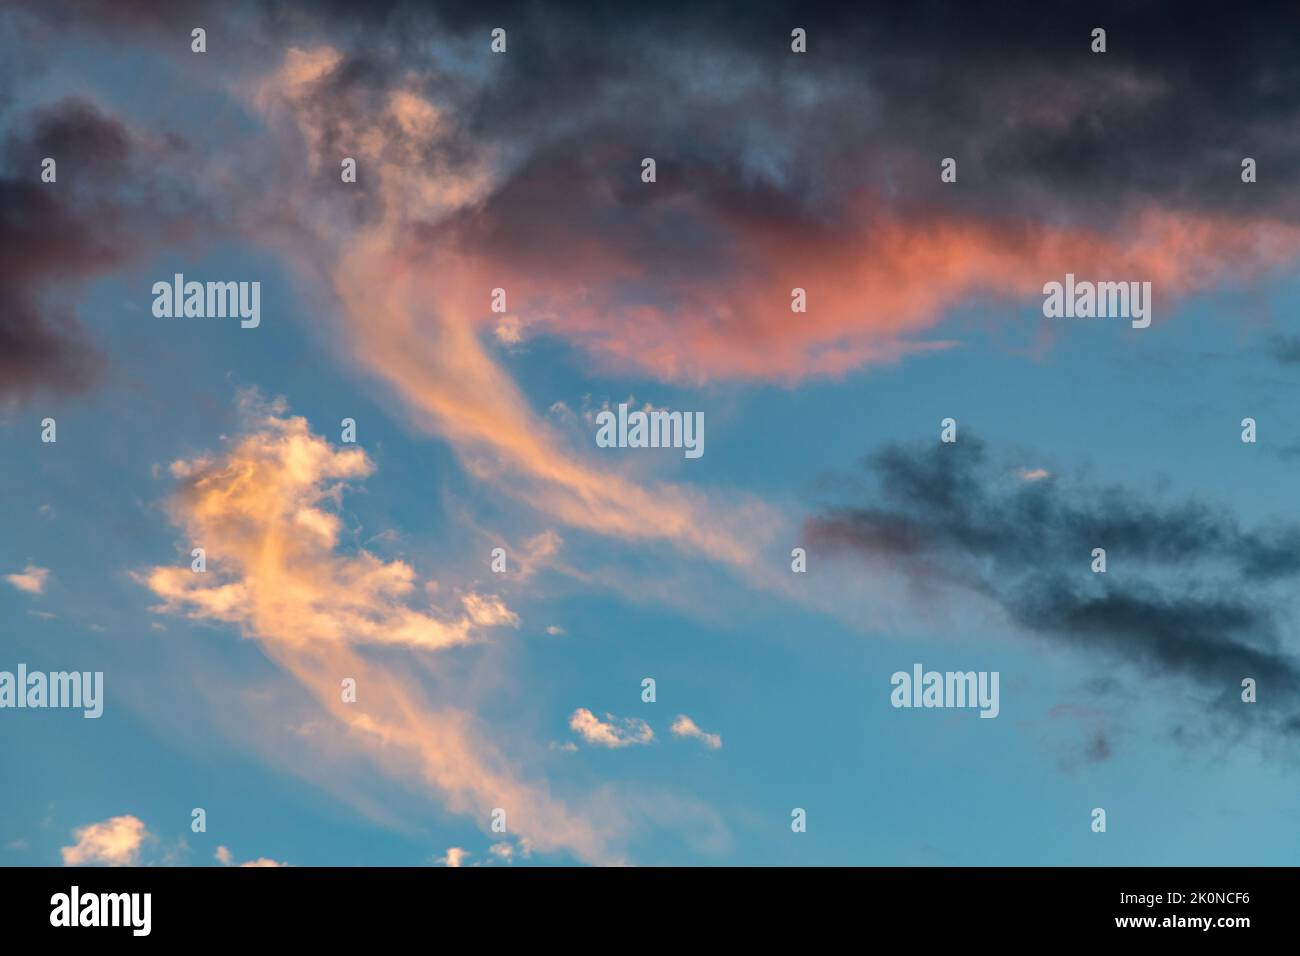 Sky with cloudy sunset - Vue d'un ciel nuageux lors d'un coucher de soleil Stock Photo